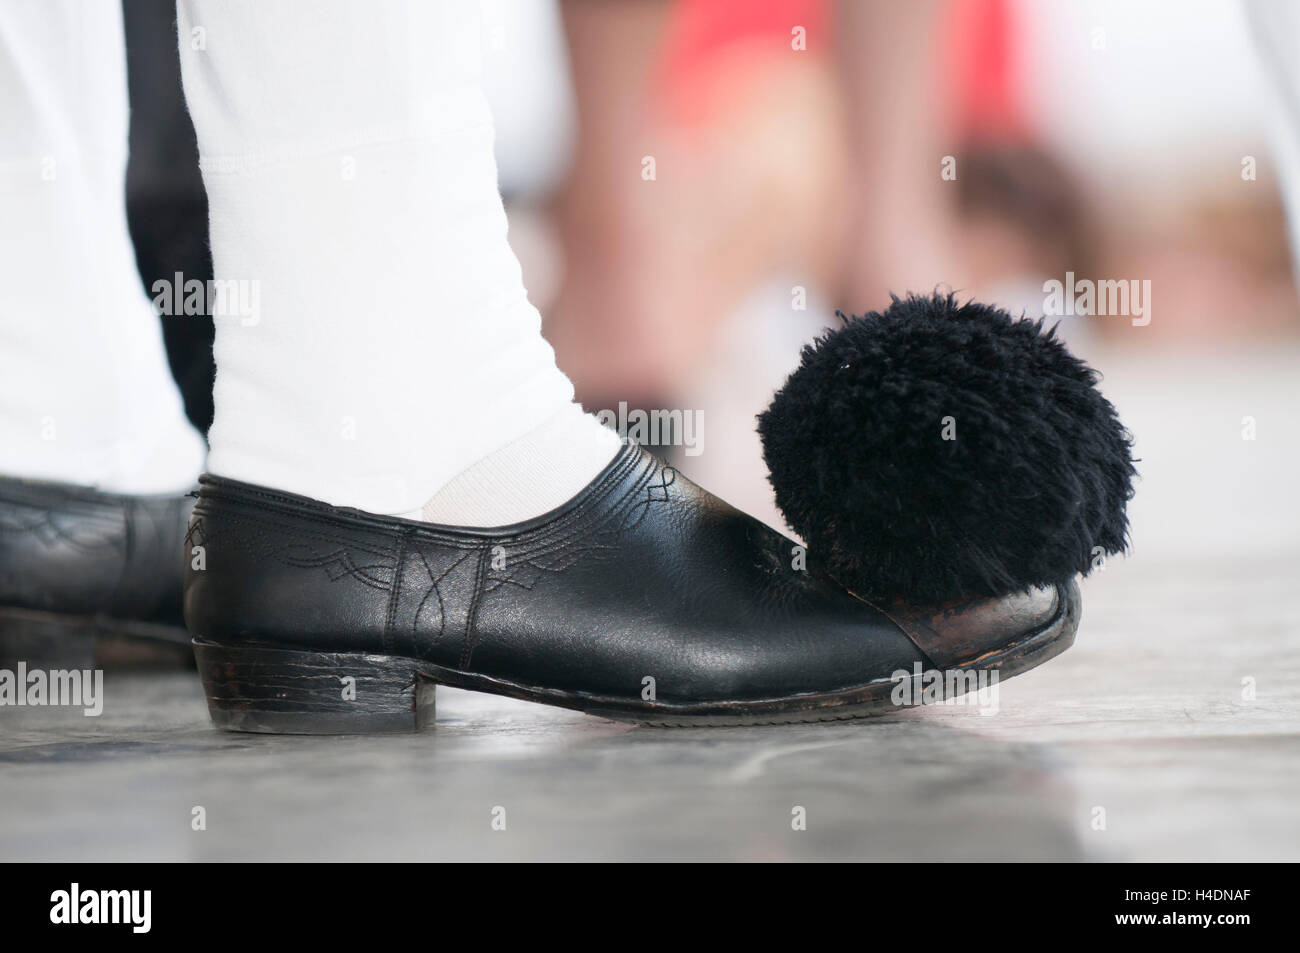 schwarzen Schuh mit Bommel, griechische Volkstracht Stockfotografie - Alamy